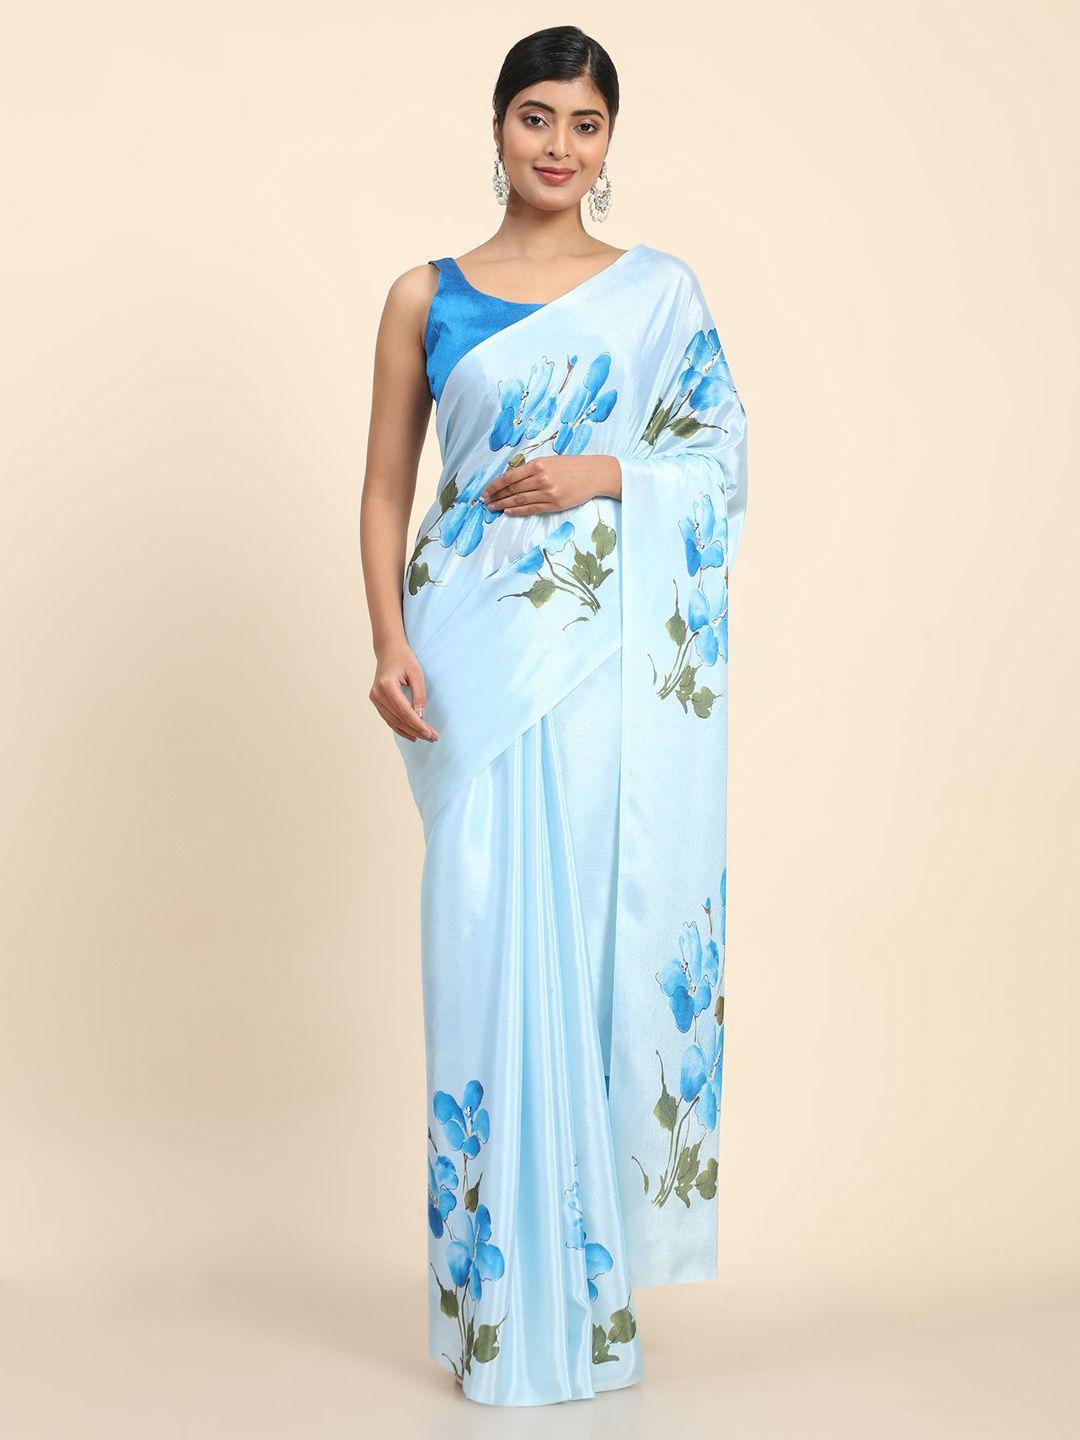 avanshee-floral-printed-pure-chiffon-saree